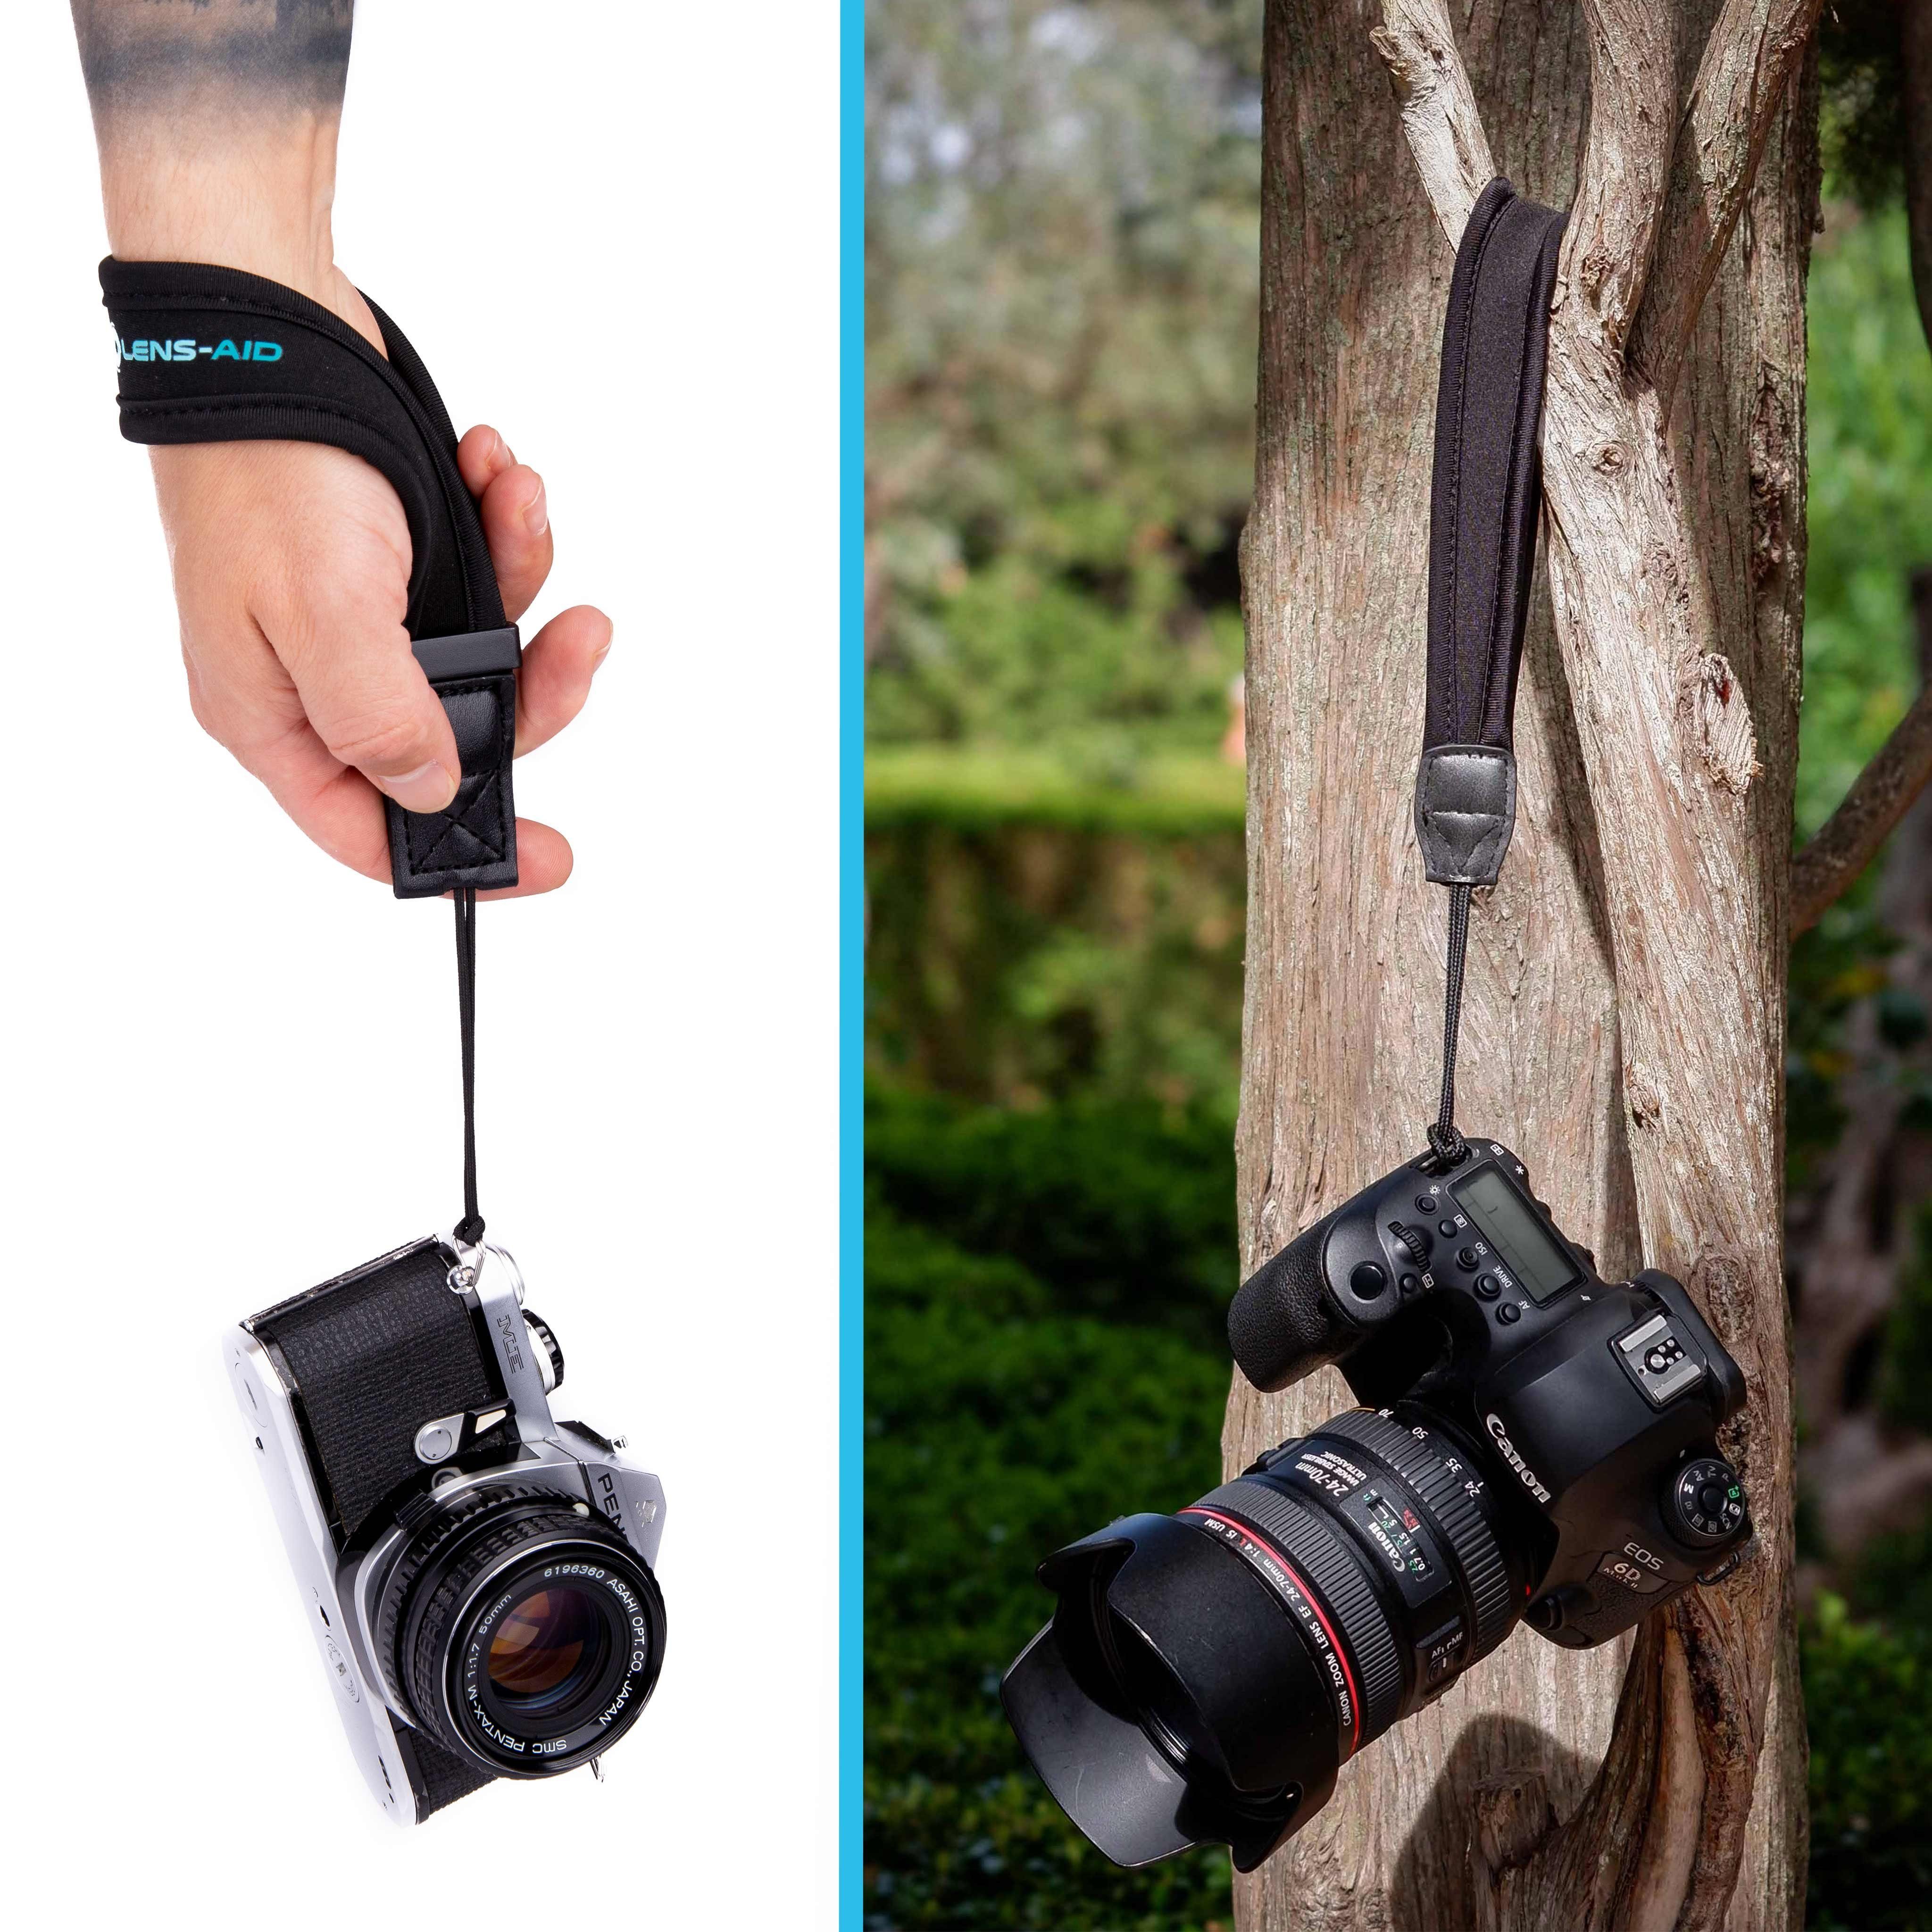 Lens-Aid Kamerazubehör-Set Handschlaufe Sony, Leica Nikon, aus Kamera: Neopren fürs für Kameragurt Handgelenk etc. Pentax, für Olympus, Canon, Fujifilm, geeignet